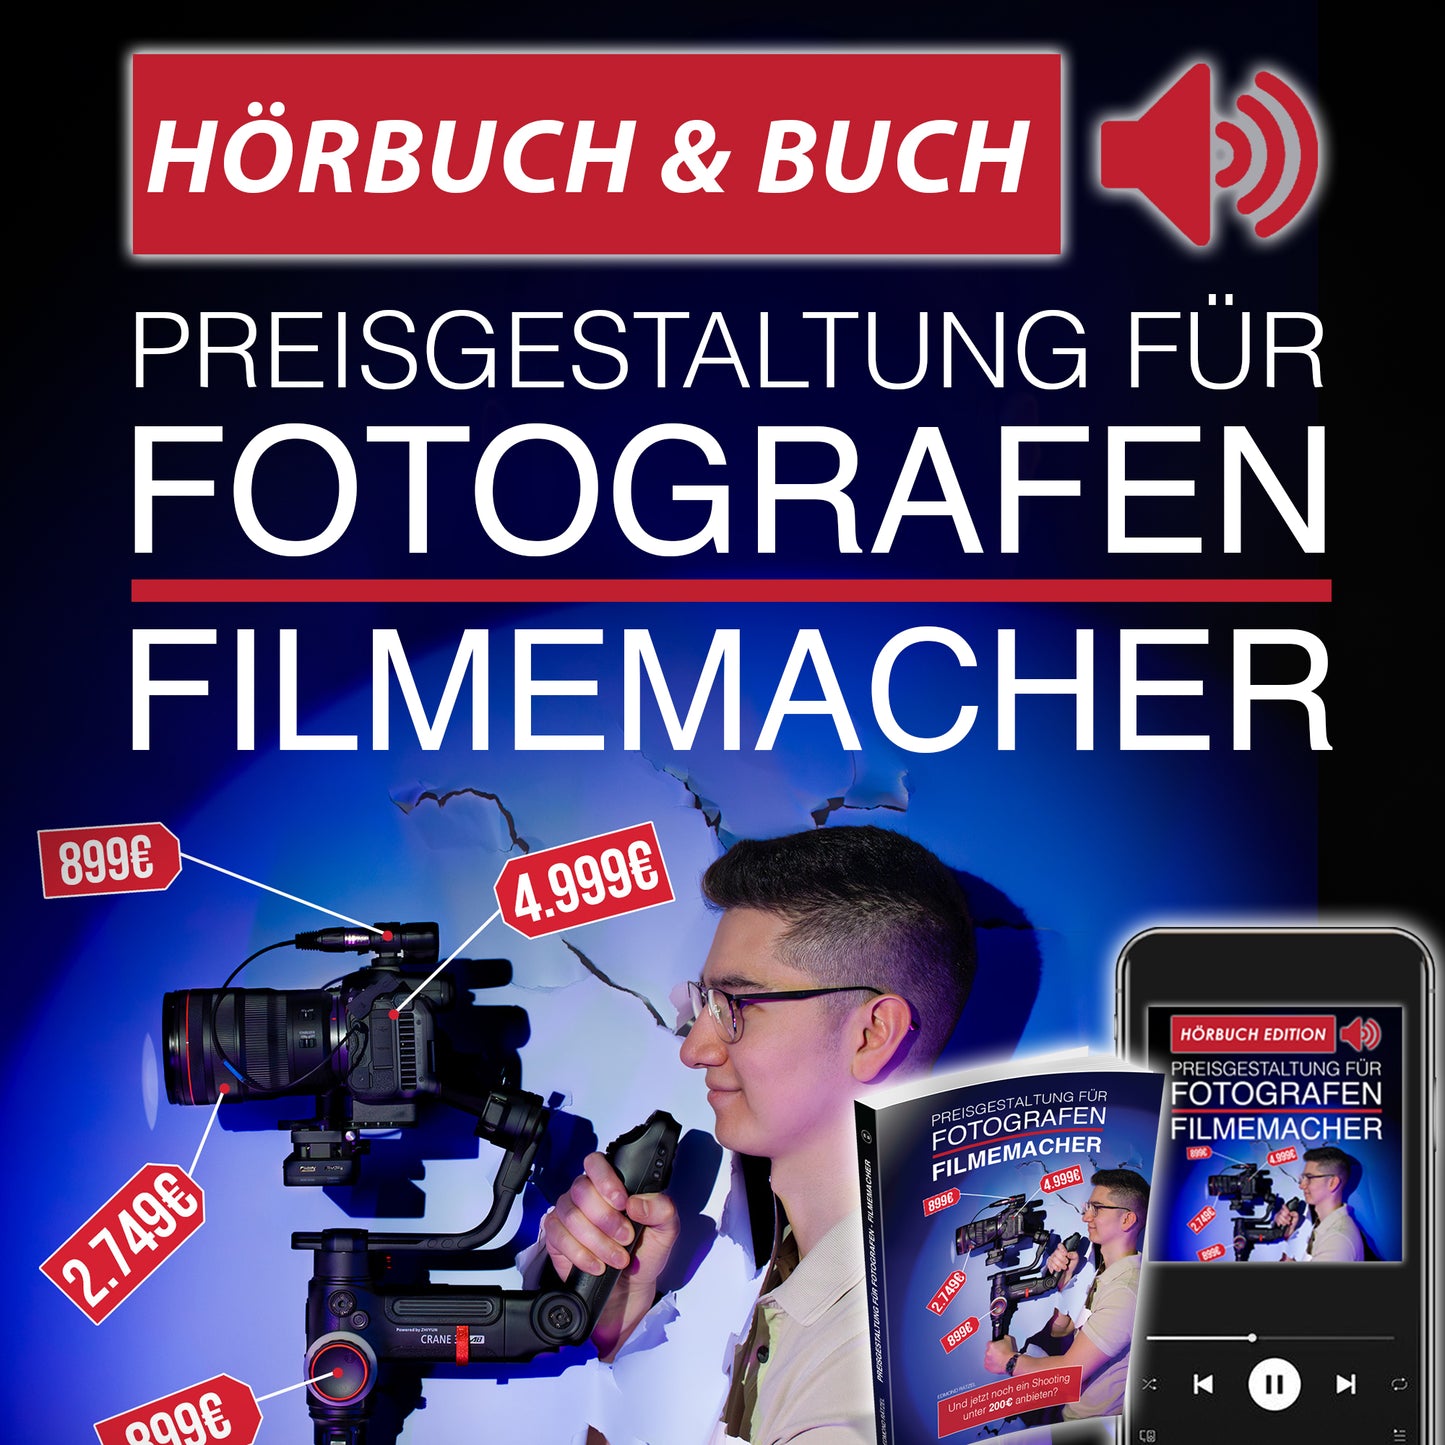 Buch & Hörbuch | Preisgestaltung für Fotografen | Filmemacher